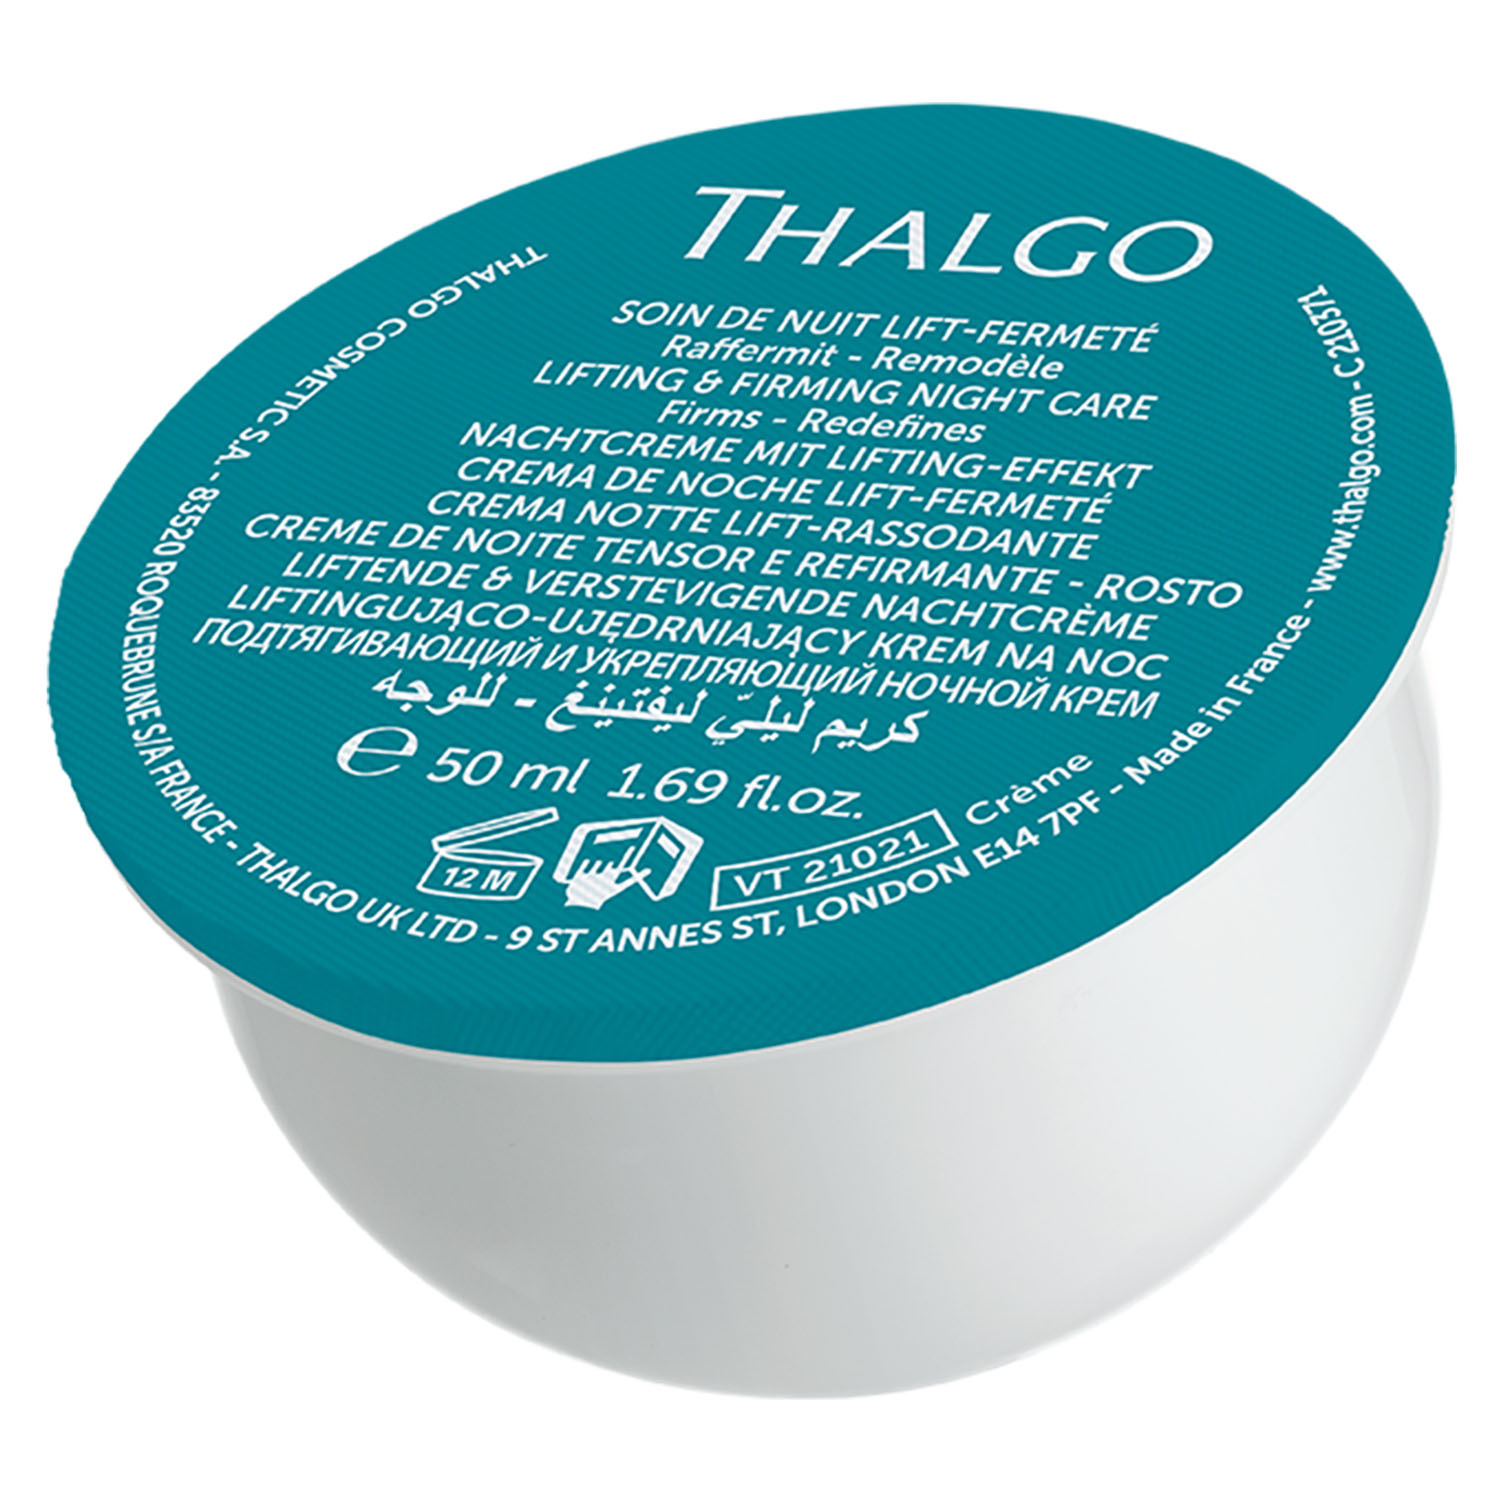 Thalgo Подтягивающий и укрепляющий ночной крем, сменный блок 50 мл (Thalgo, Silicium Lift) цена и фото